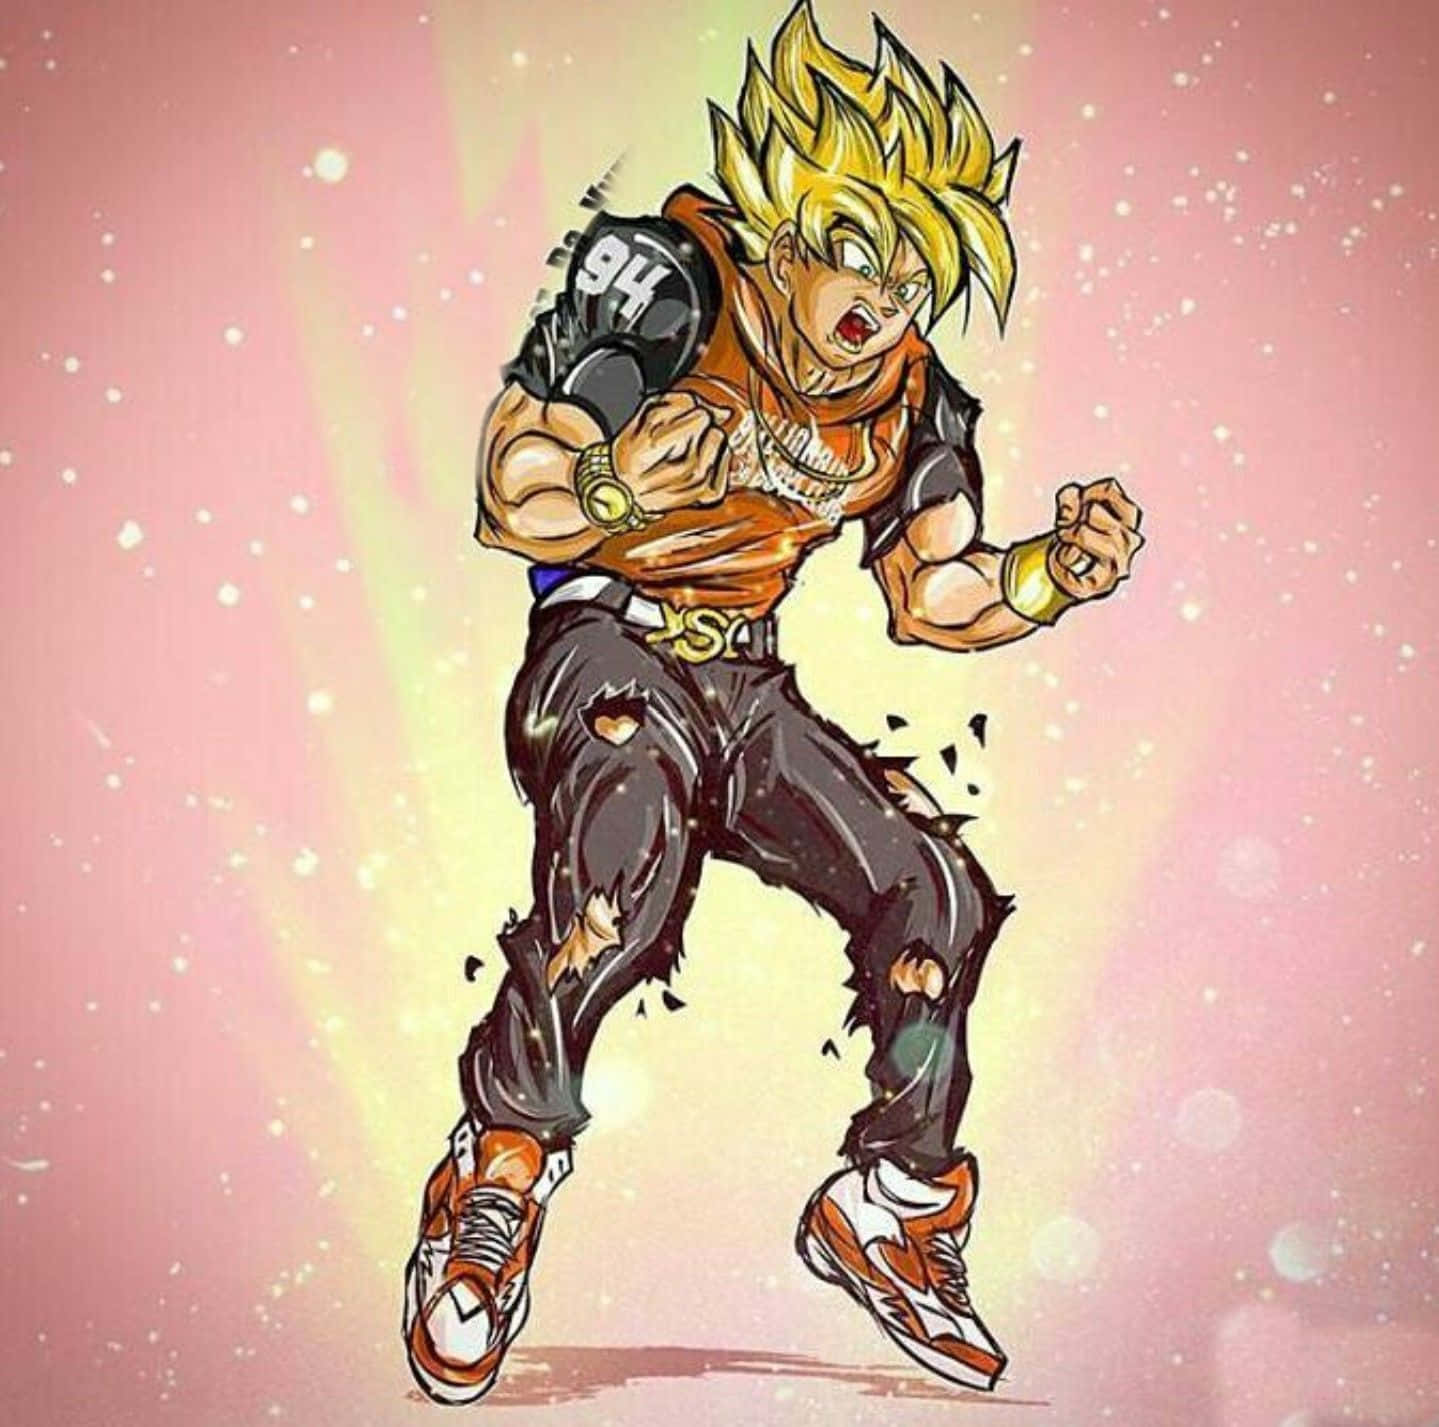 Gokusupreme Leder Vägen Med Otrolig Styrka, Kraft Och Beslutsamhet På Dataskärmen Eller Mobiltapeten. Wallpaper